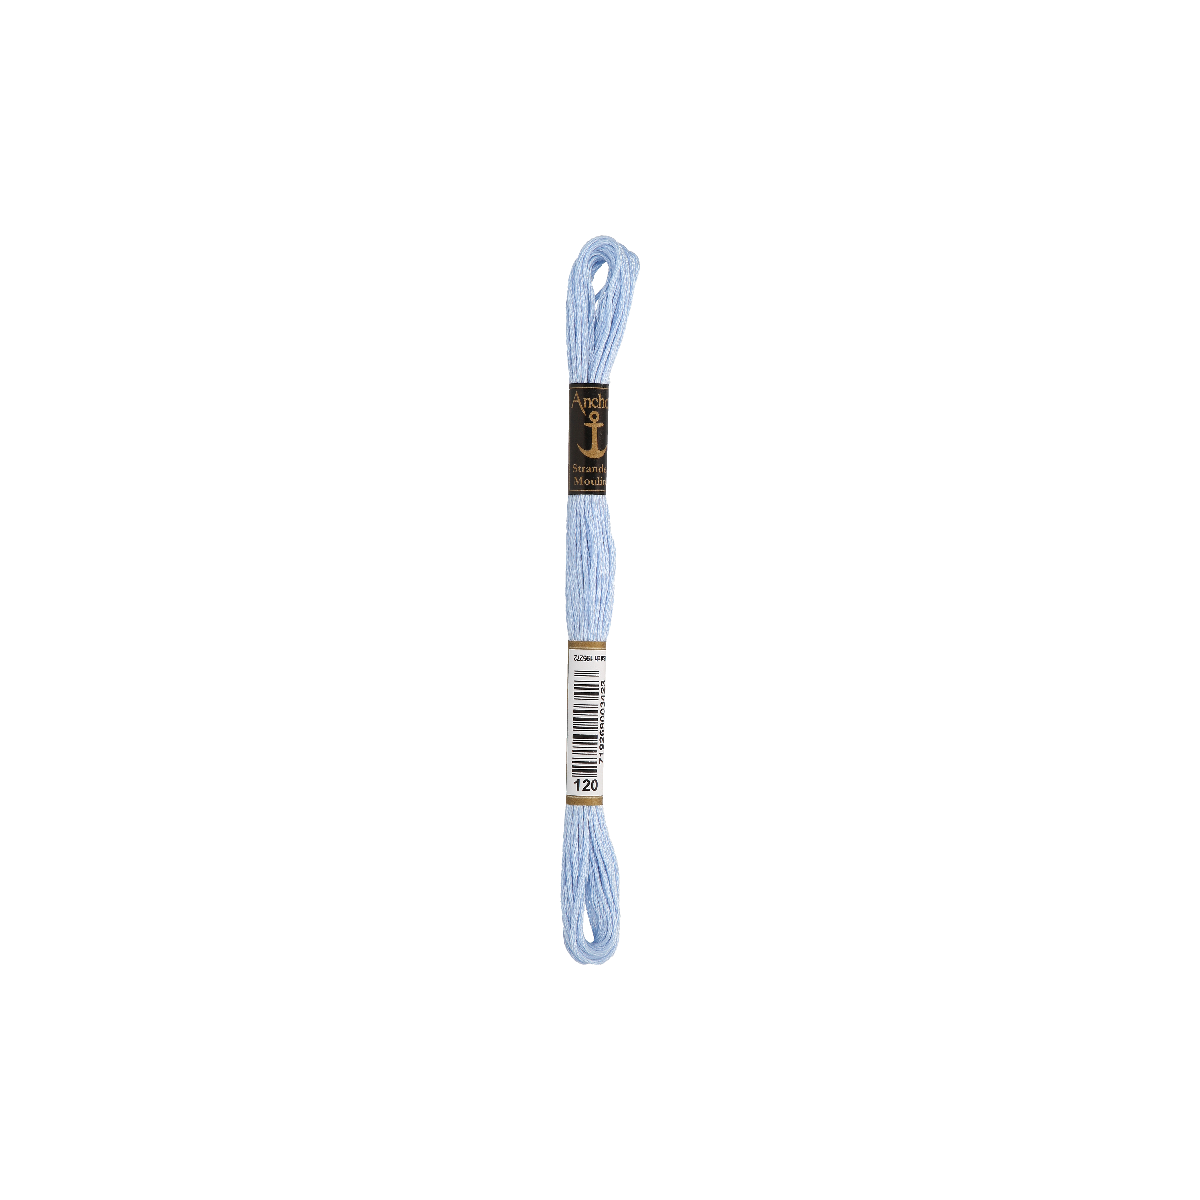 Anchor Sticktwist 8m, pastellblau, Baumwolle, Farbe 120,...